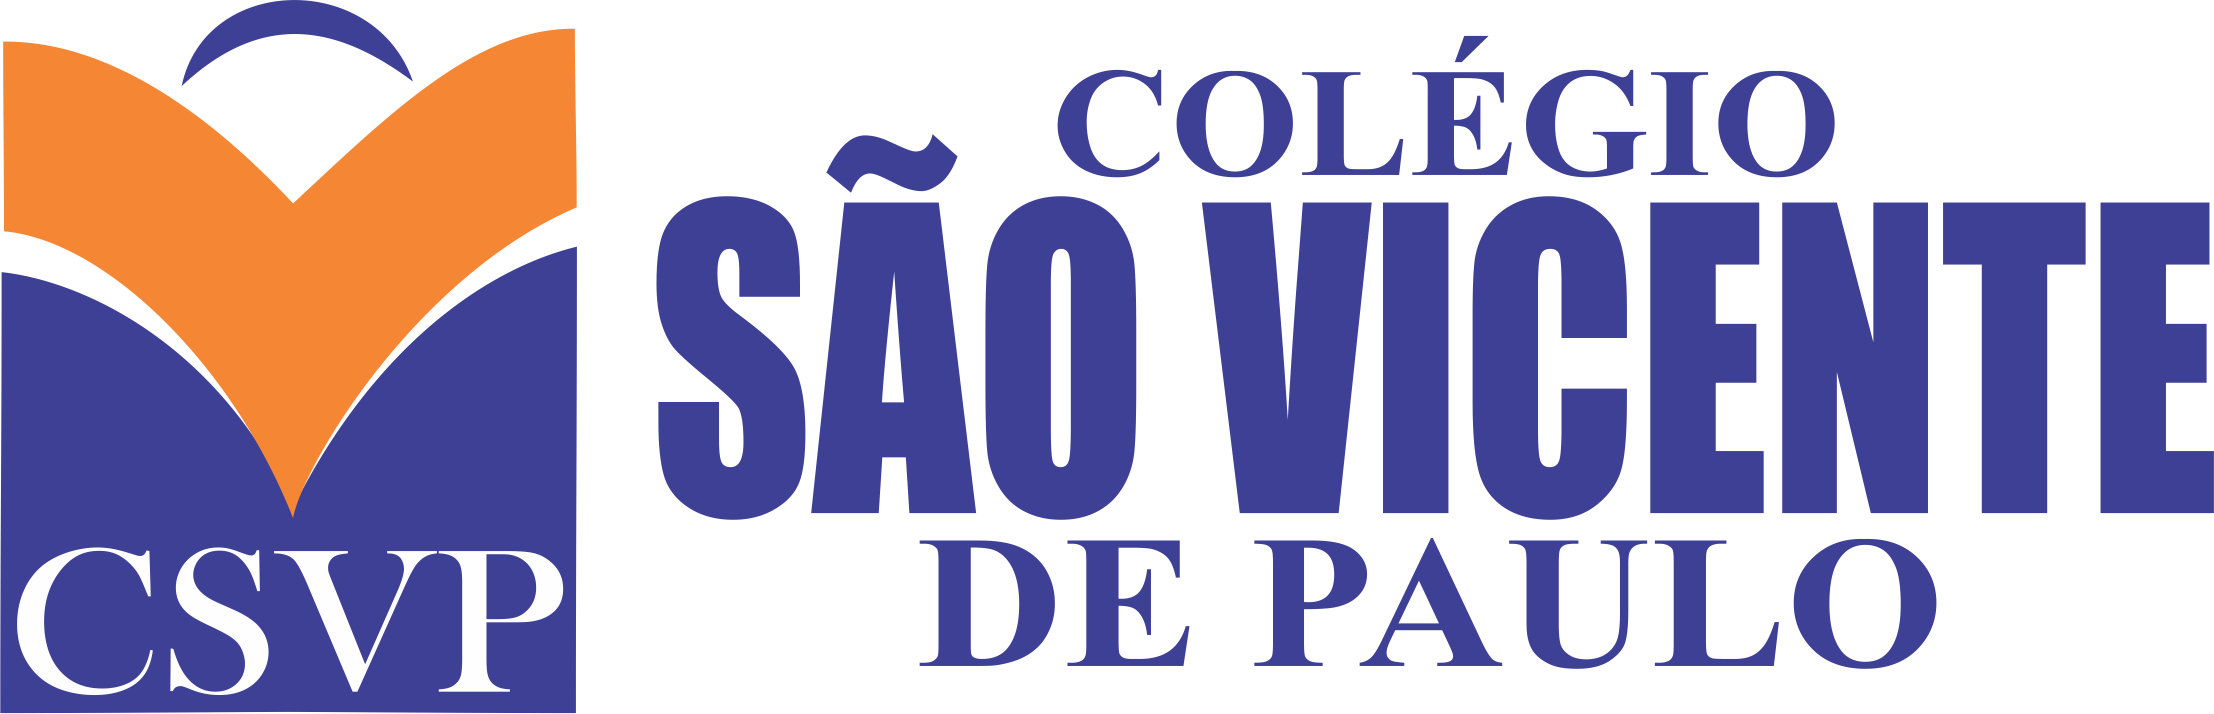 Colégio São Vicente de Paulo (CSVP) - Cosme Velho - 2 conseils de